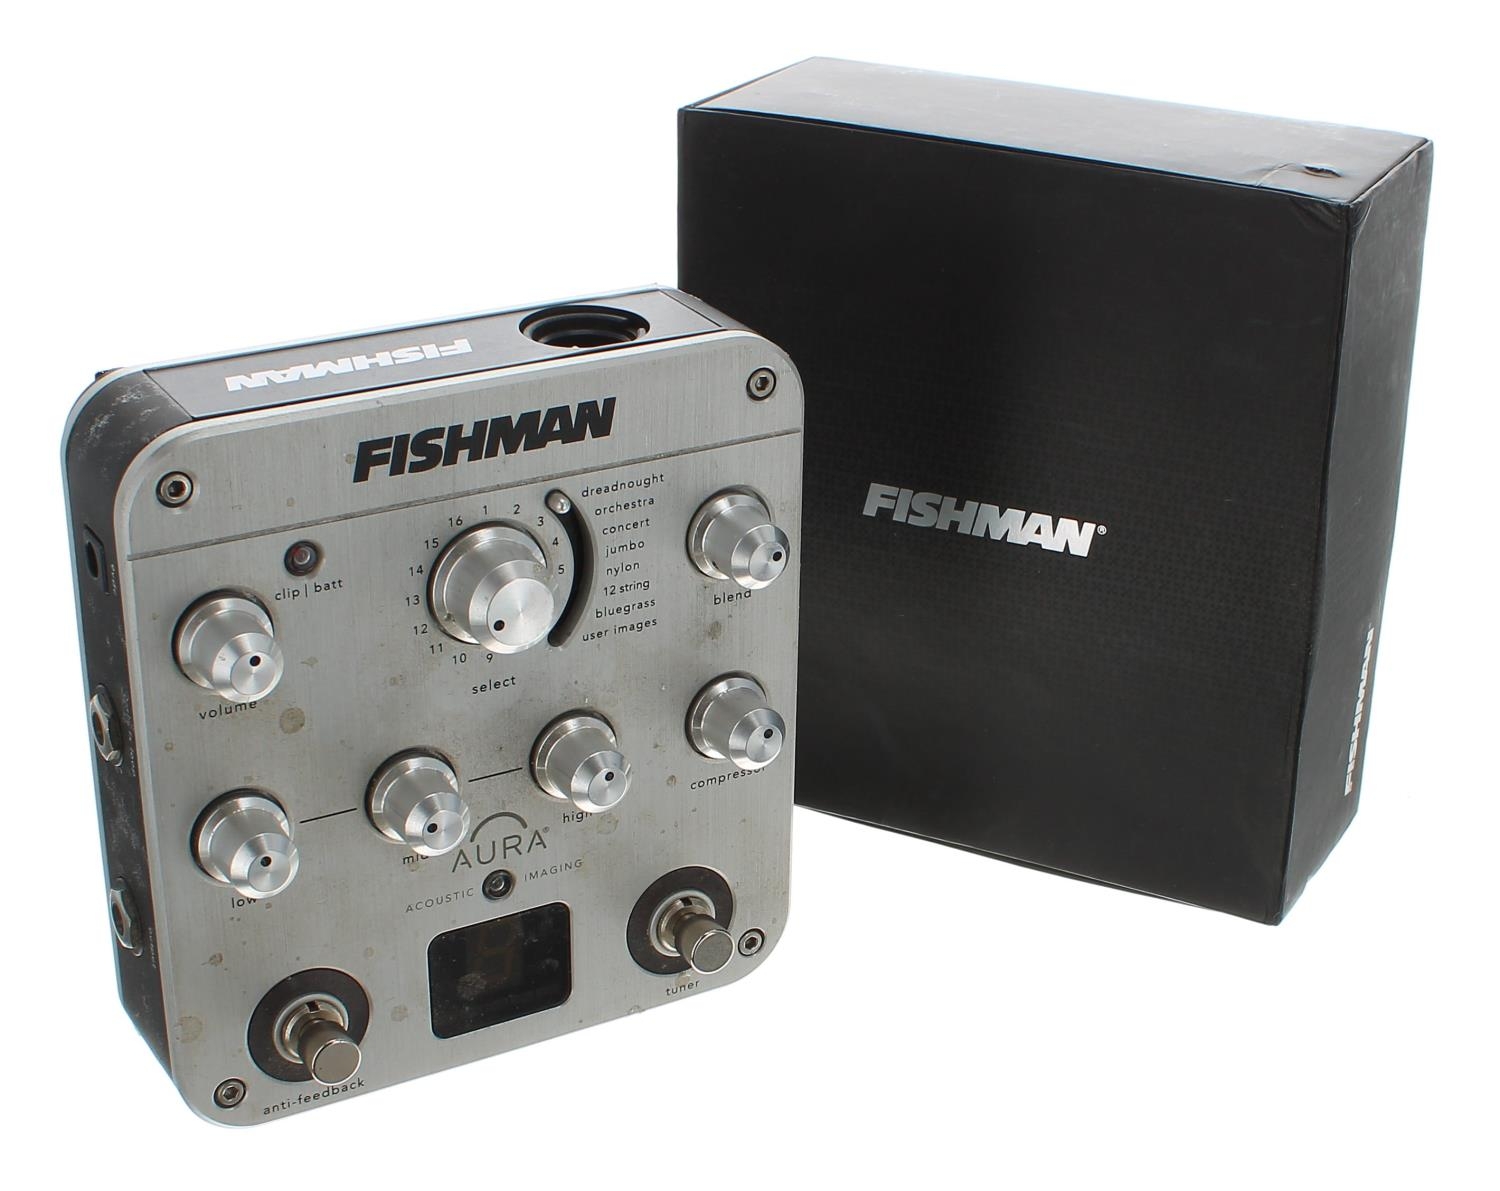 Fishman Aura Spectrum DI Imaging Pedal with DI